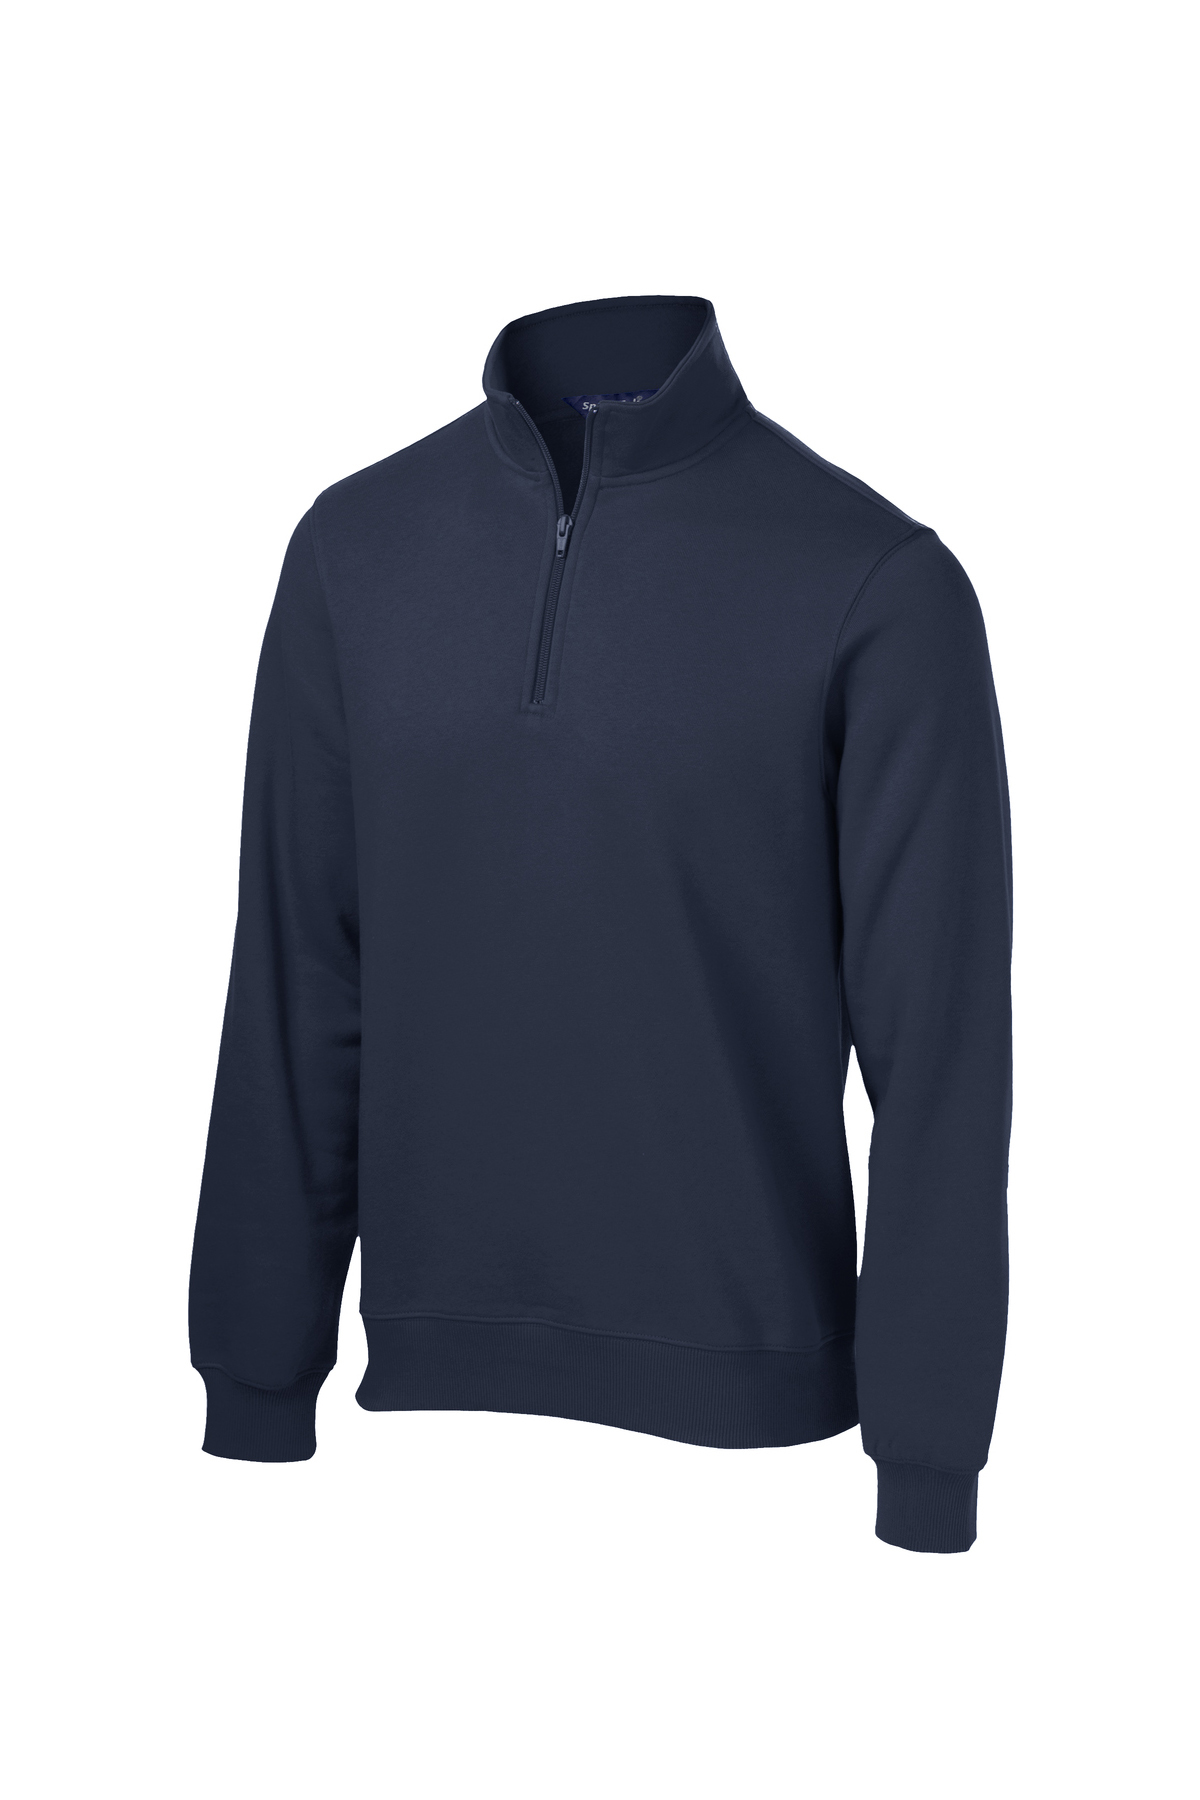 Sport-Tek 1/4-Zip Sweatshirt | Product | Sport-Tek